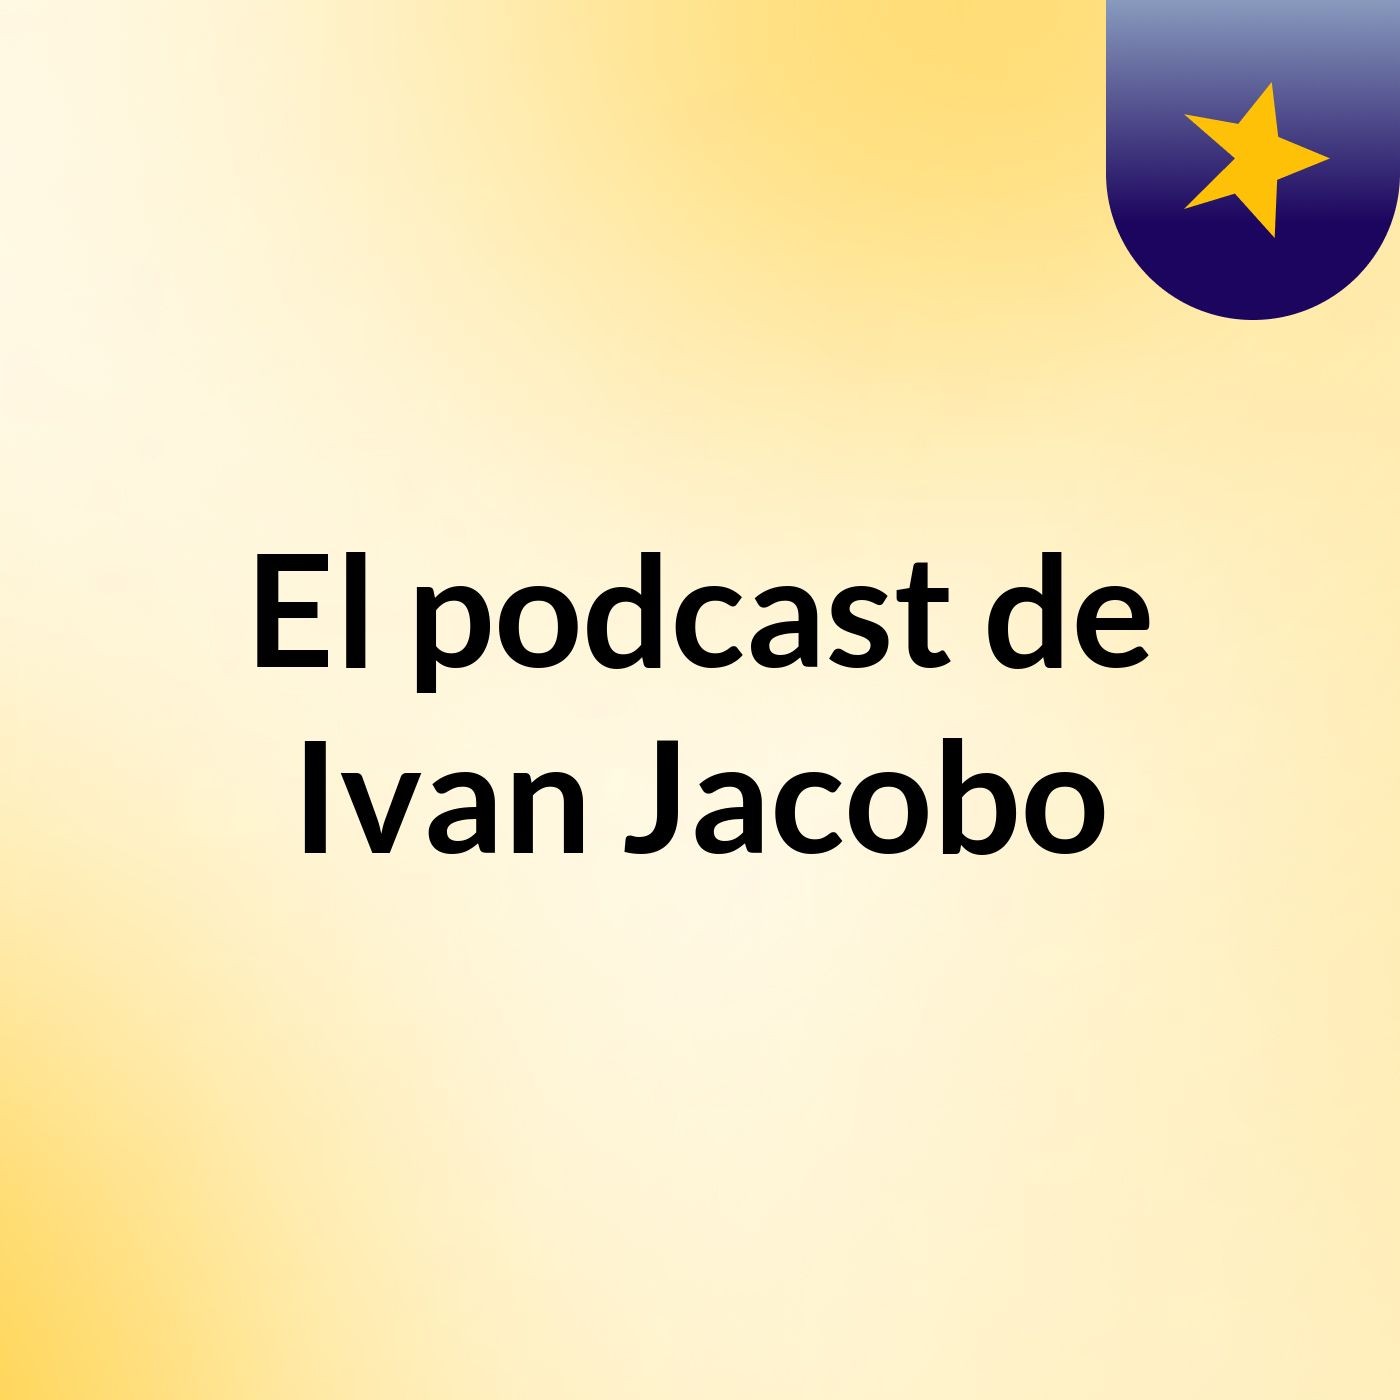 El podcast de Ivan Jacobo